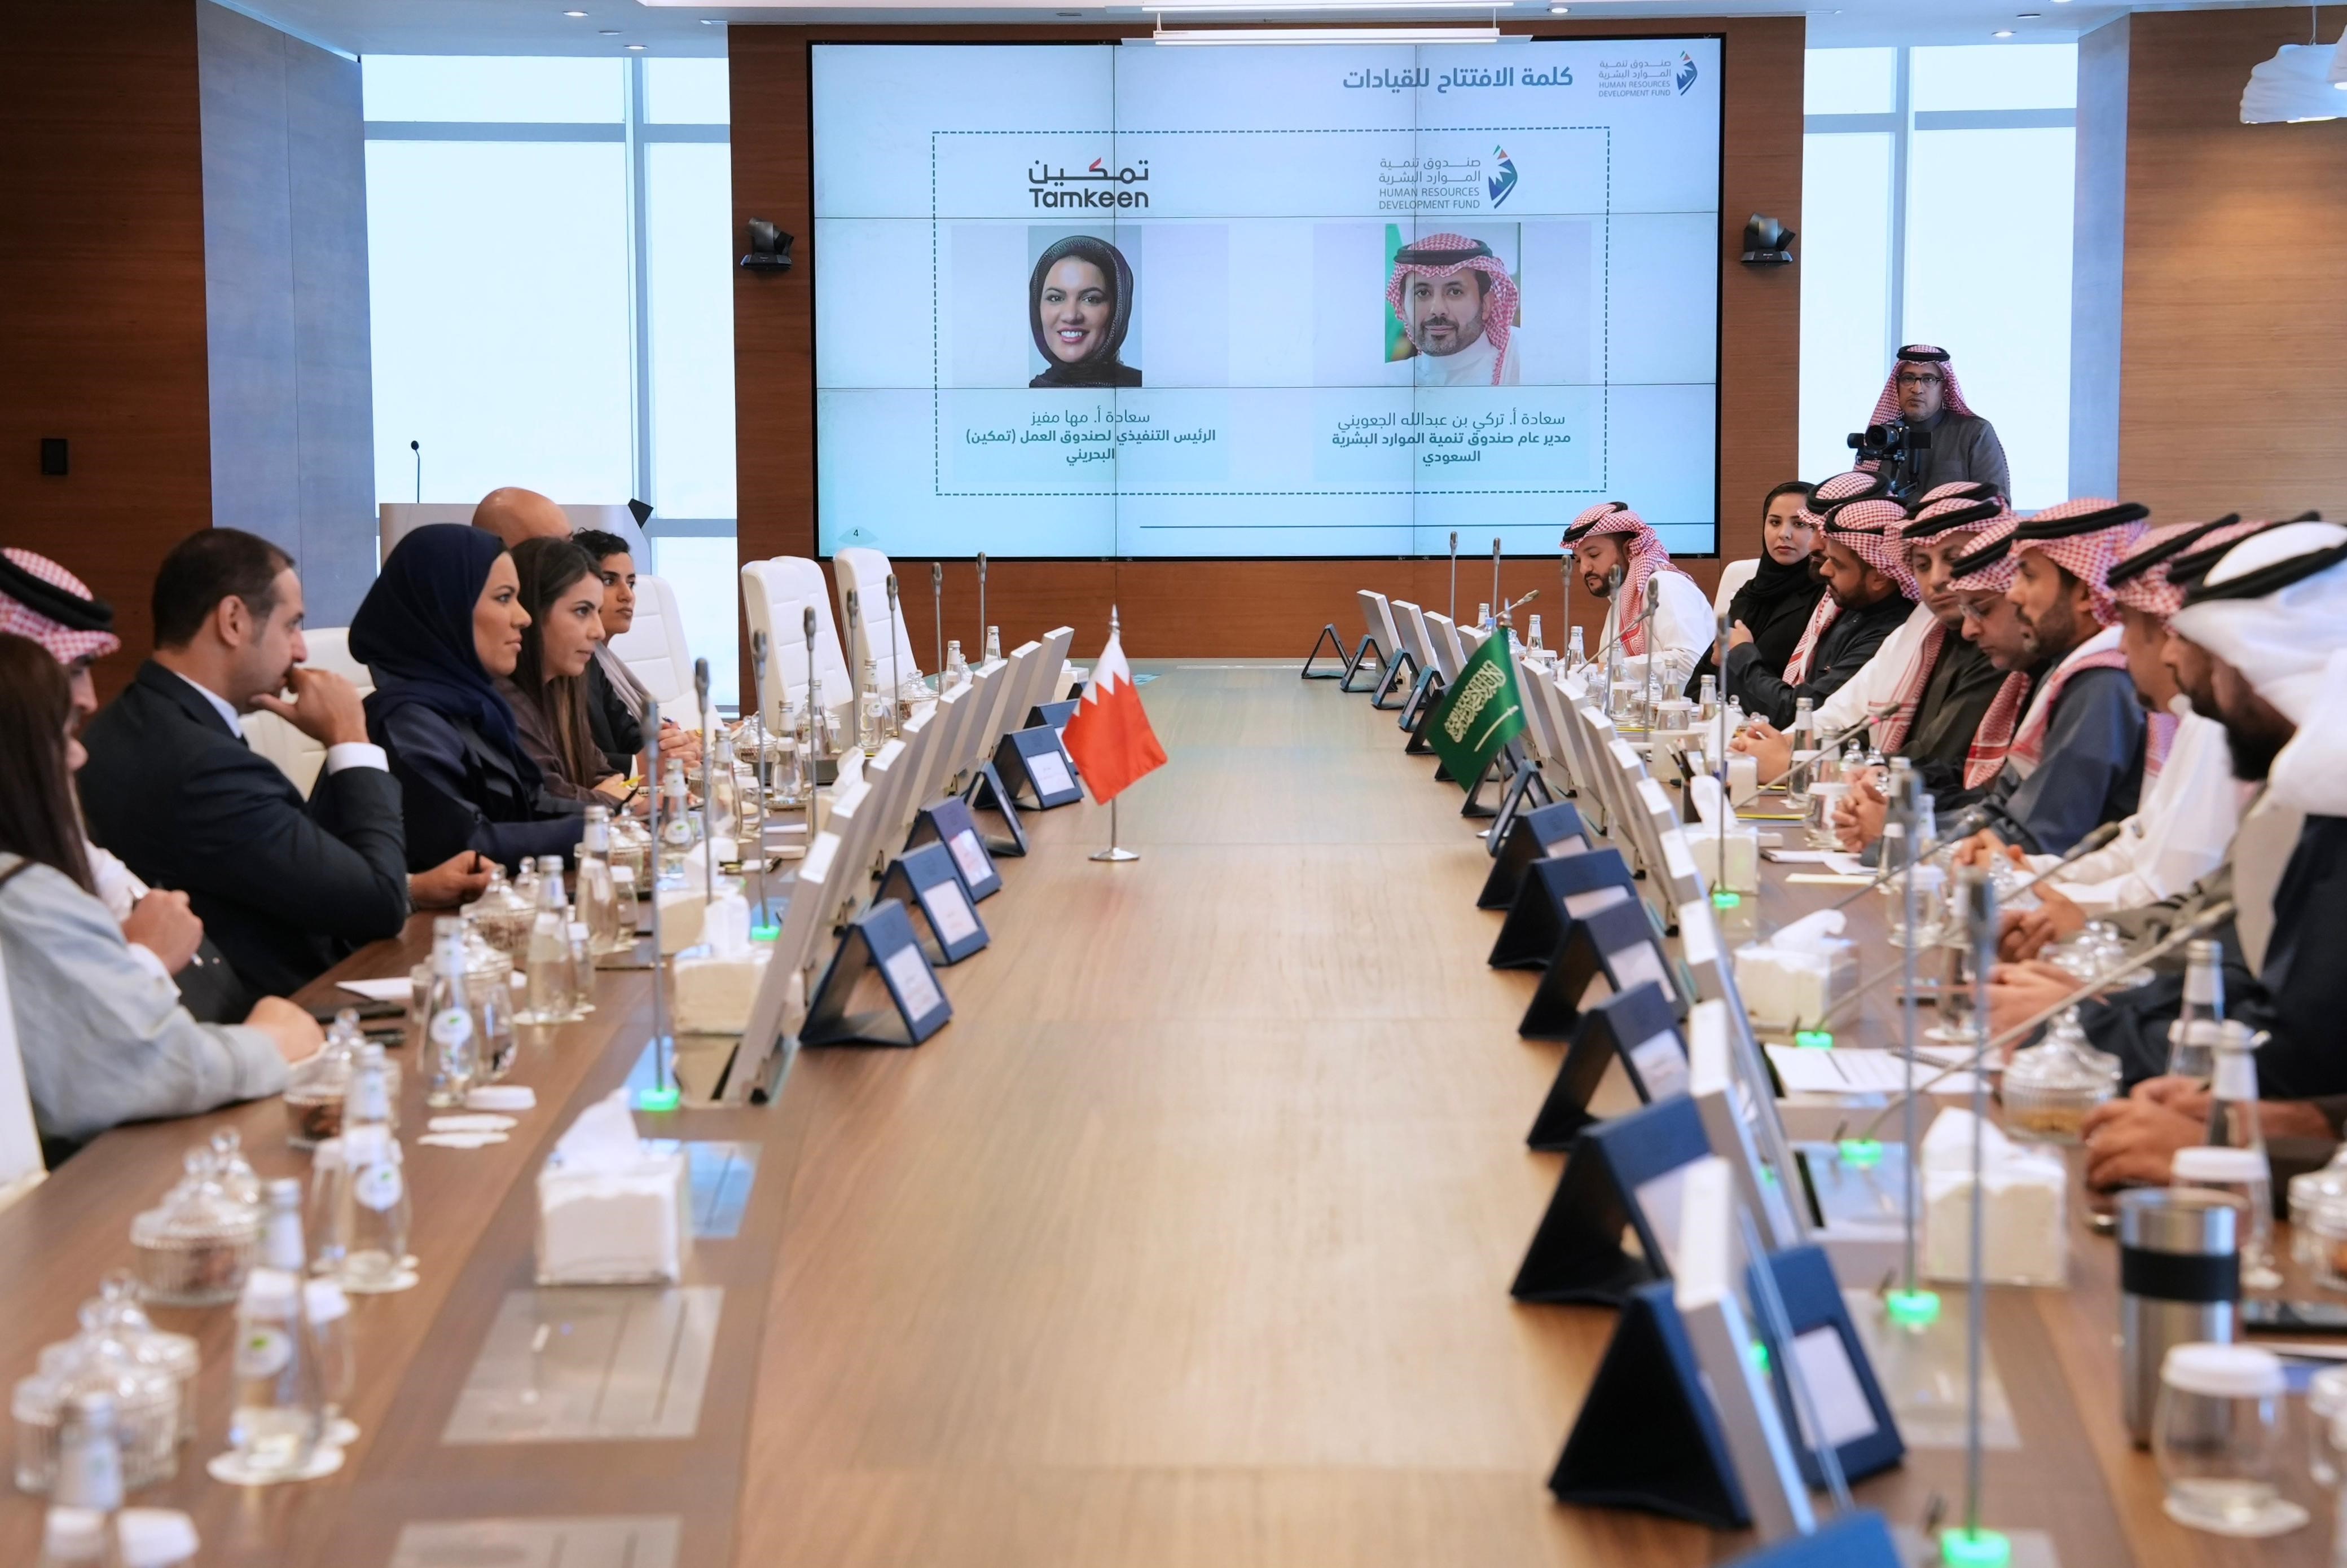 صندوق تنمية الموارد البشرية يستضيف نظيره البحريني لتعزيز العلاقات وتبادل الخبرات في مجال تنمية رأس المال البشري